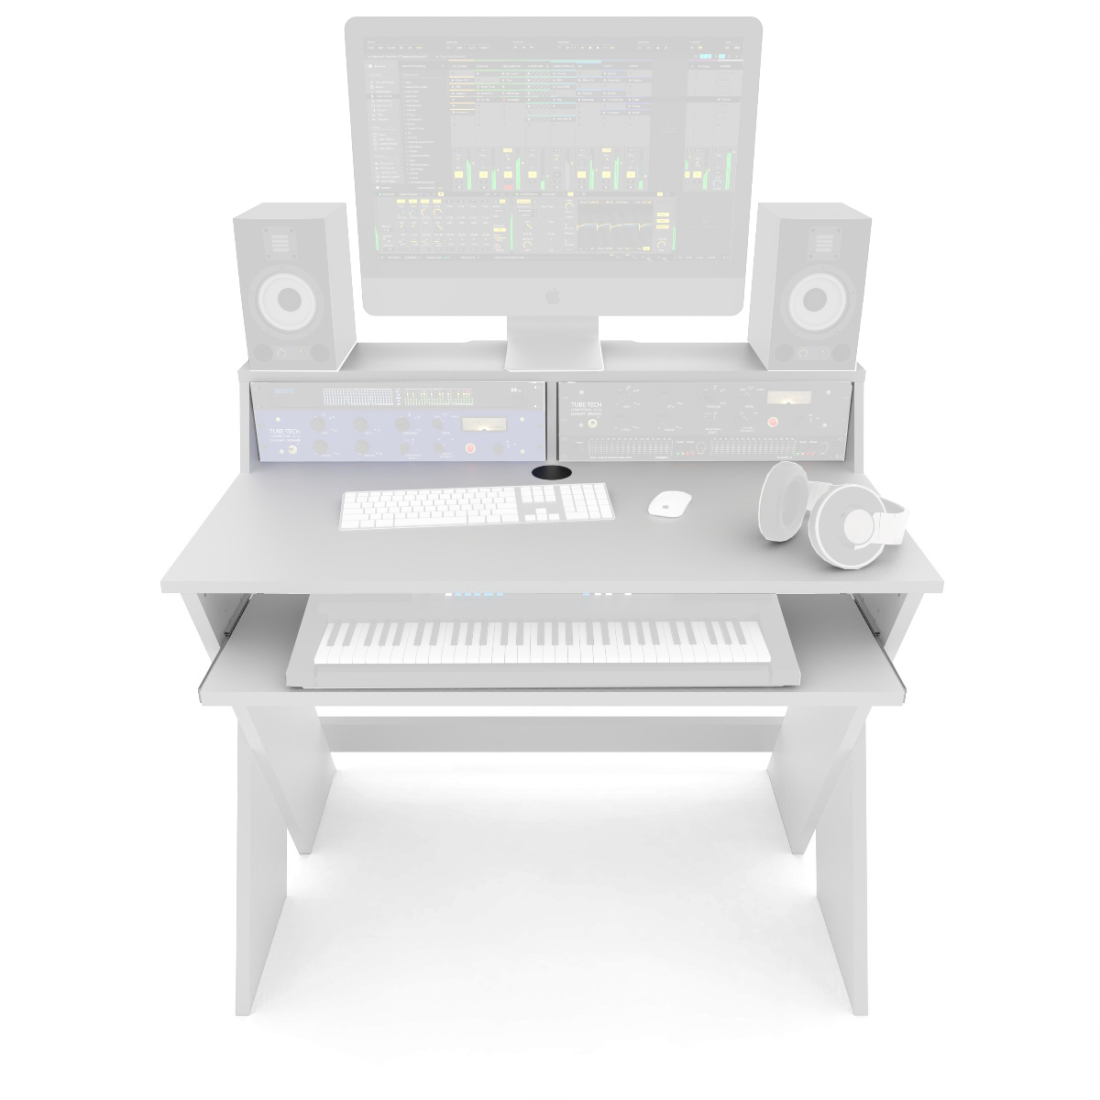 Sound Desk Compact - White